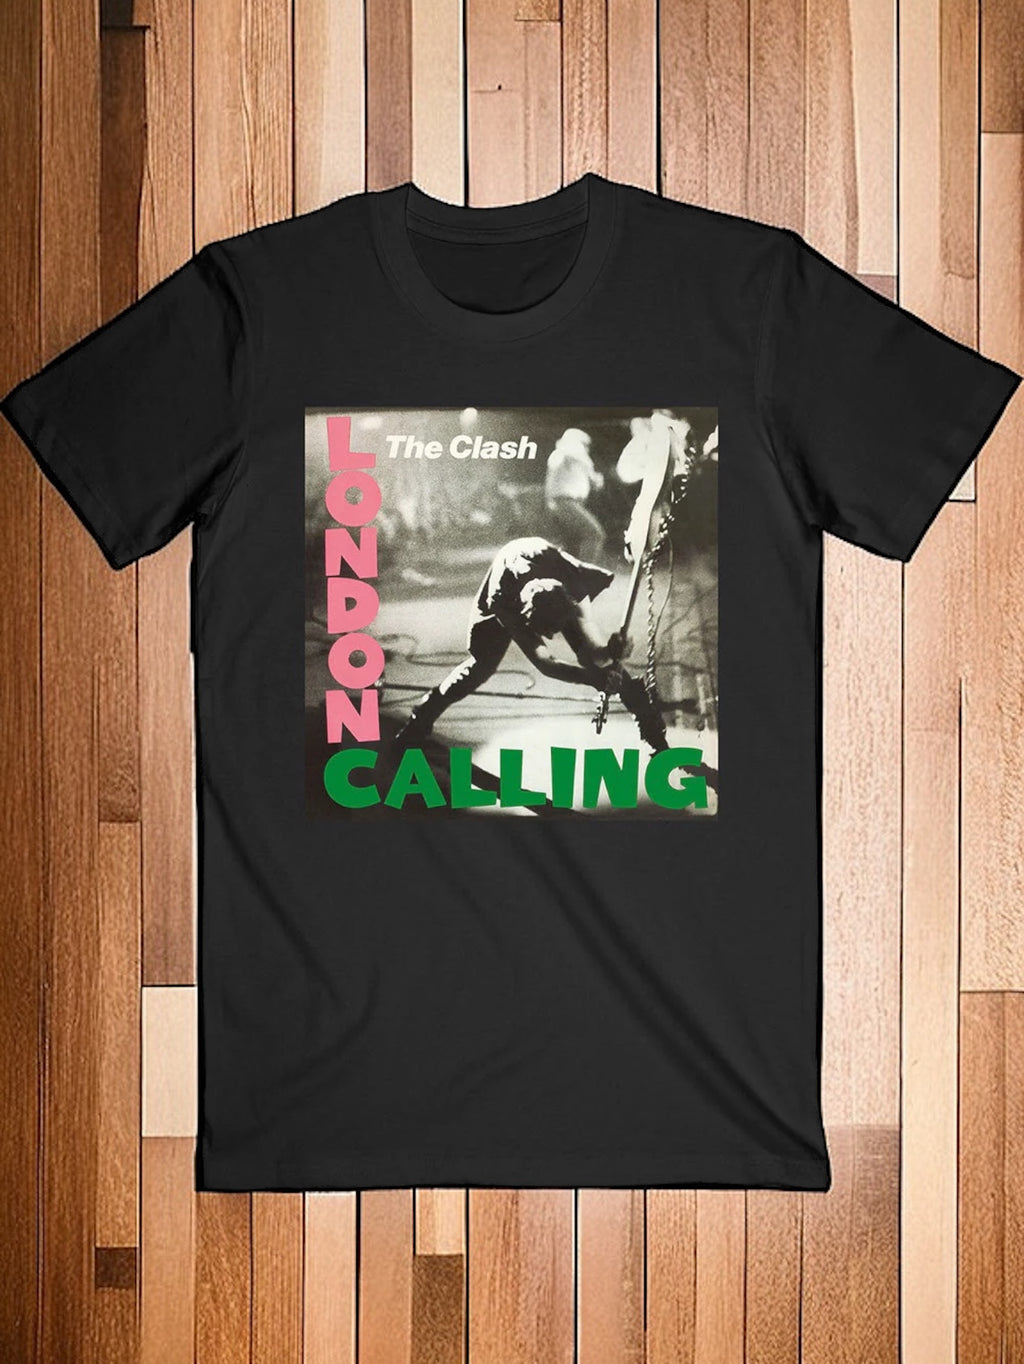 The Clash - London Calling Album Men's Tee